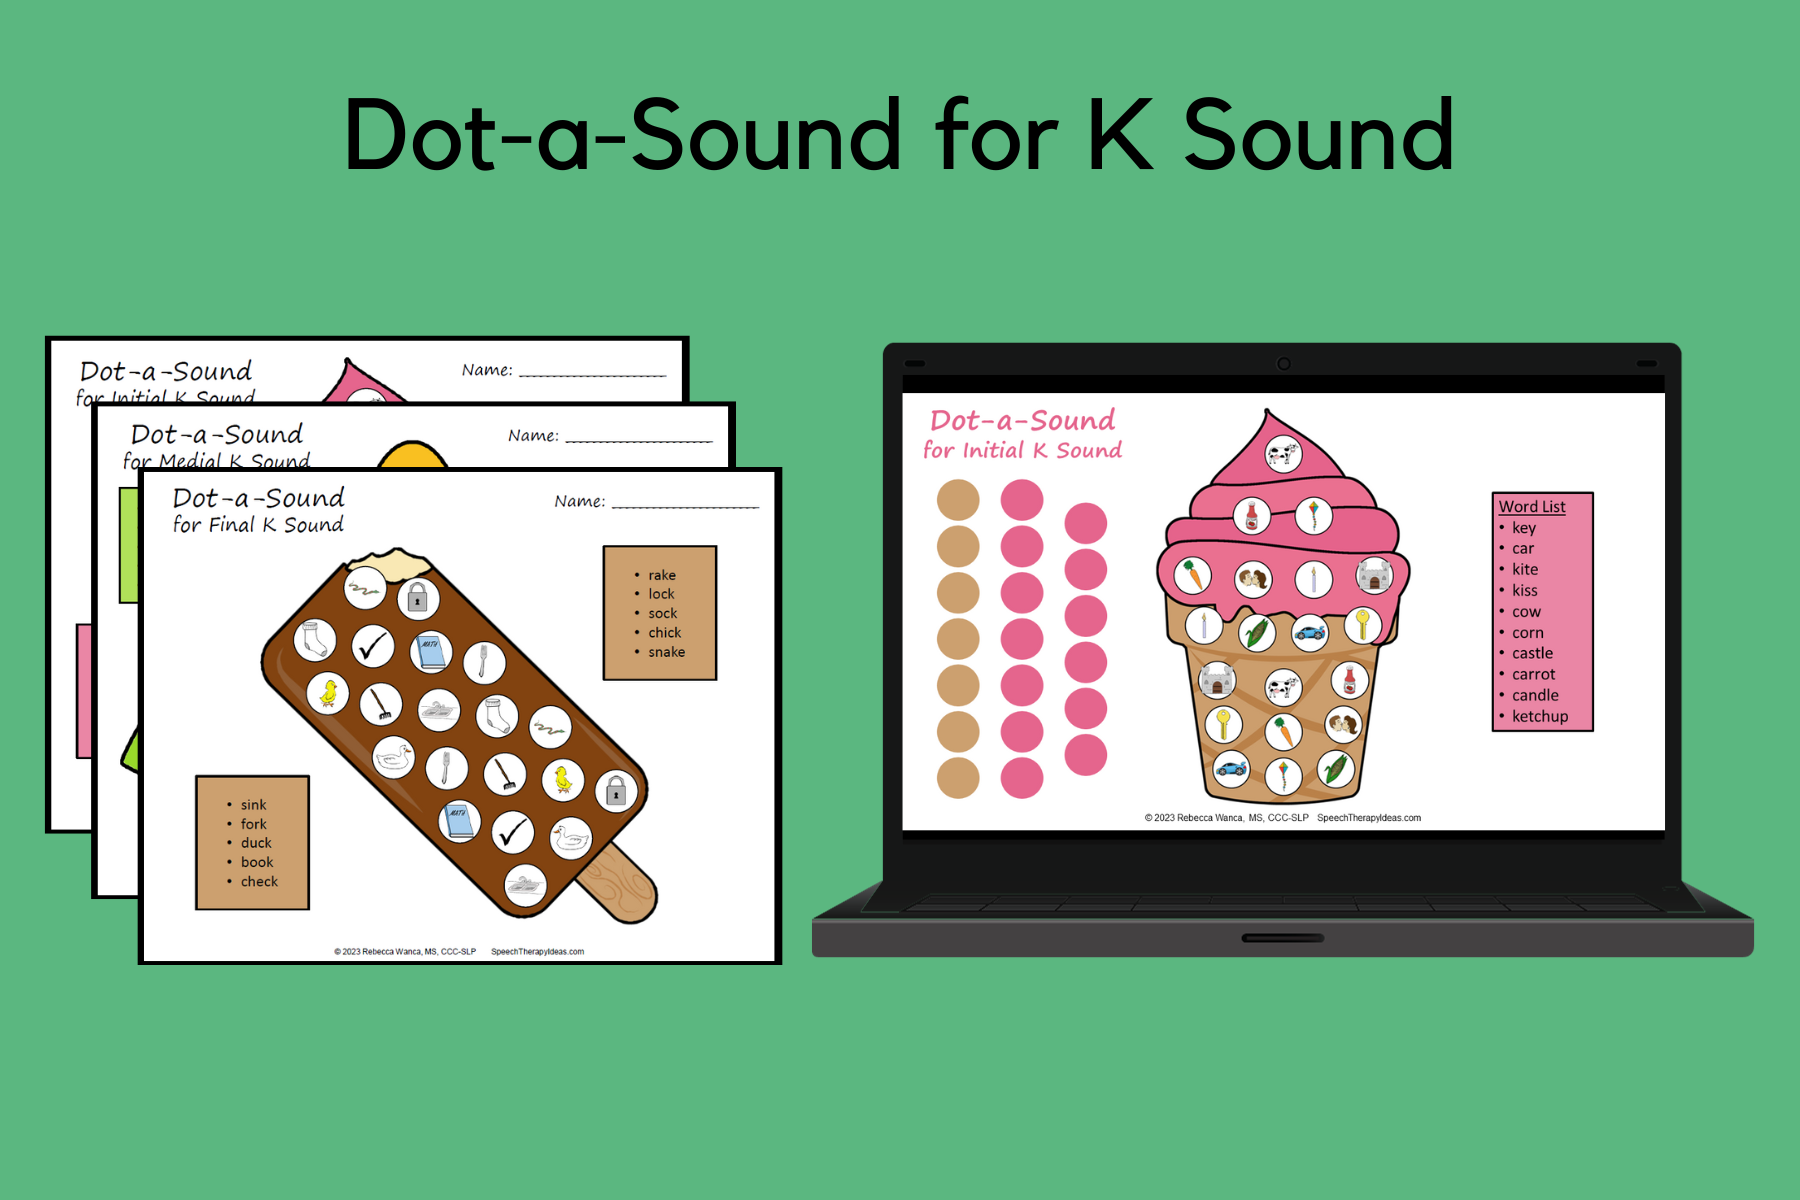 Dot-a-Sound for K Sound